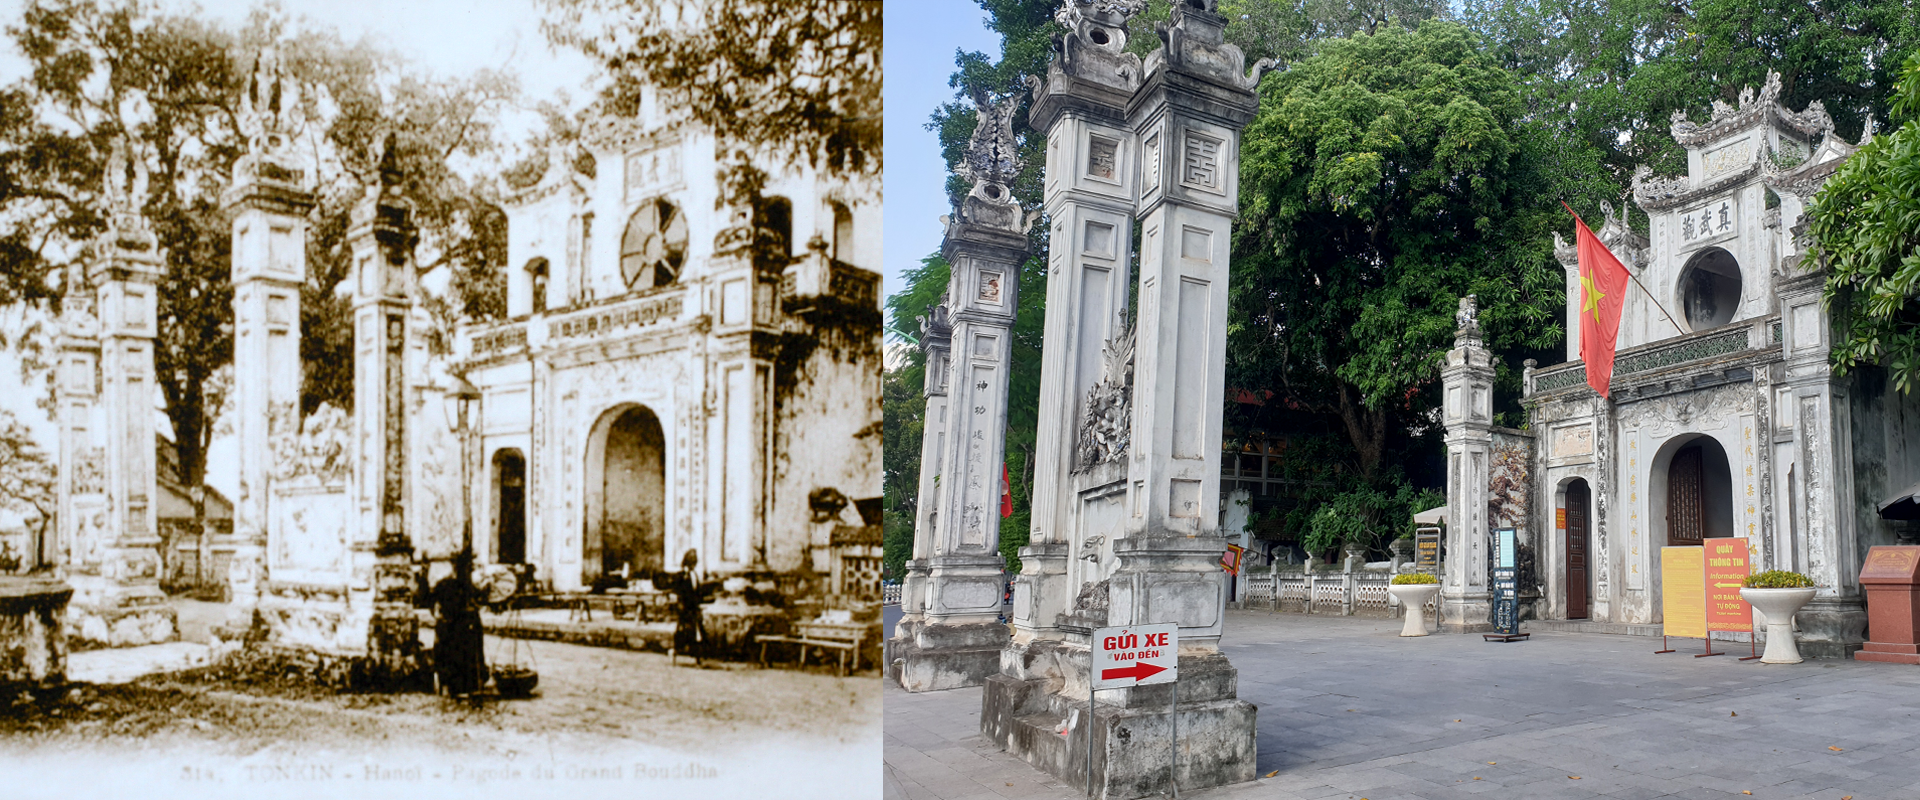 Những hình ảnh thú vị về sự đổi thay của Hà Nội sau 100 năm - Ảnh 15.